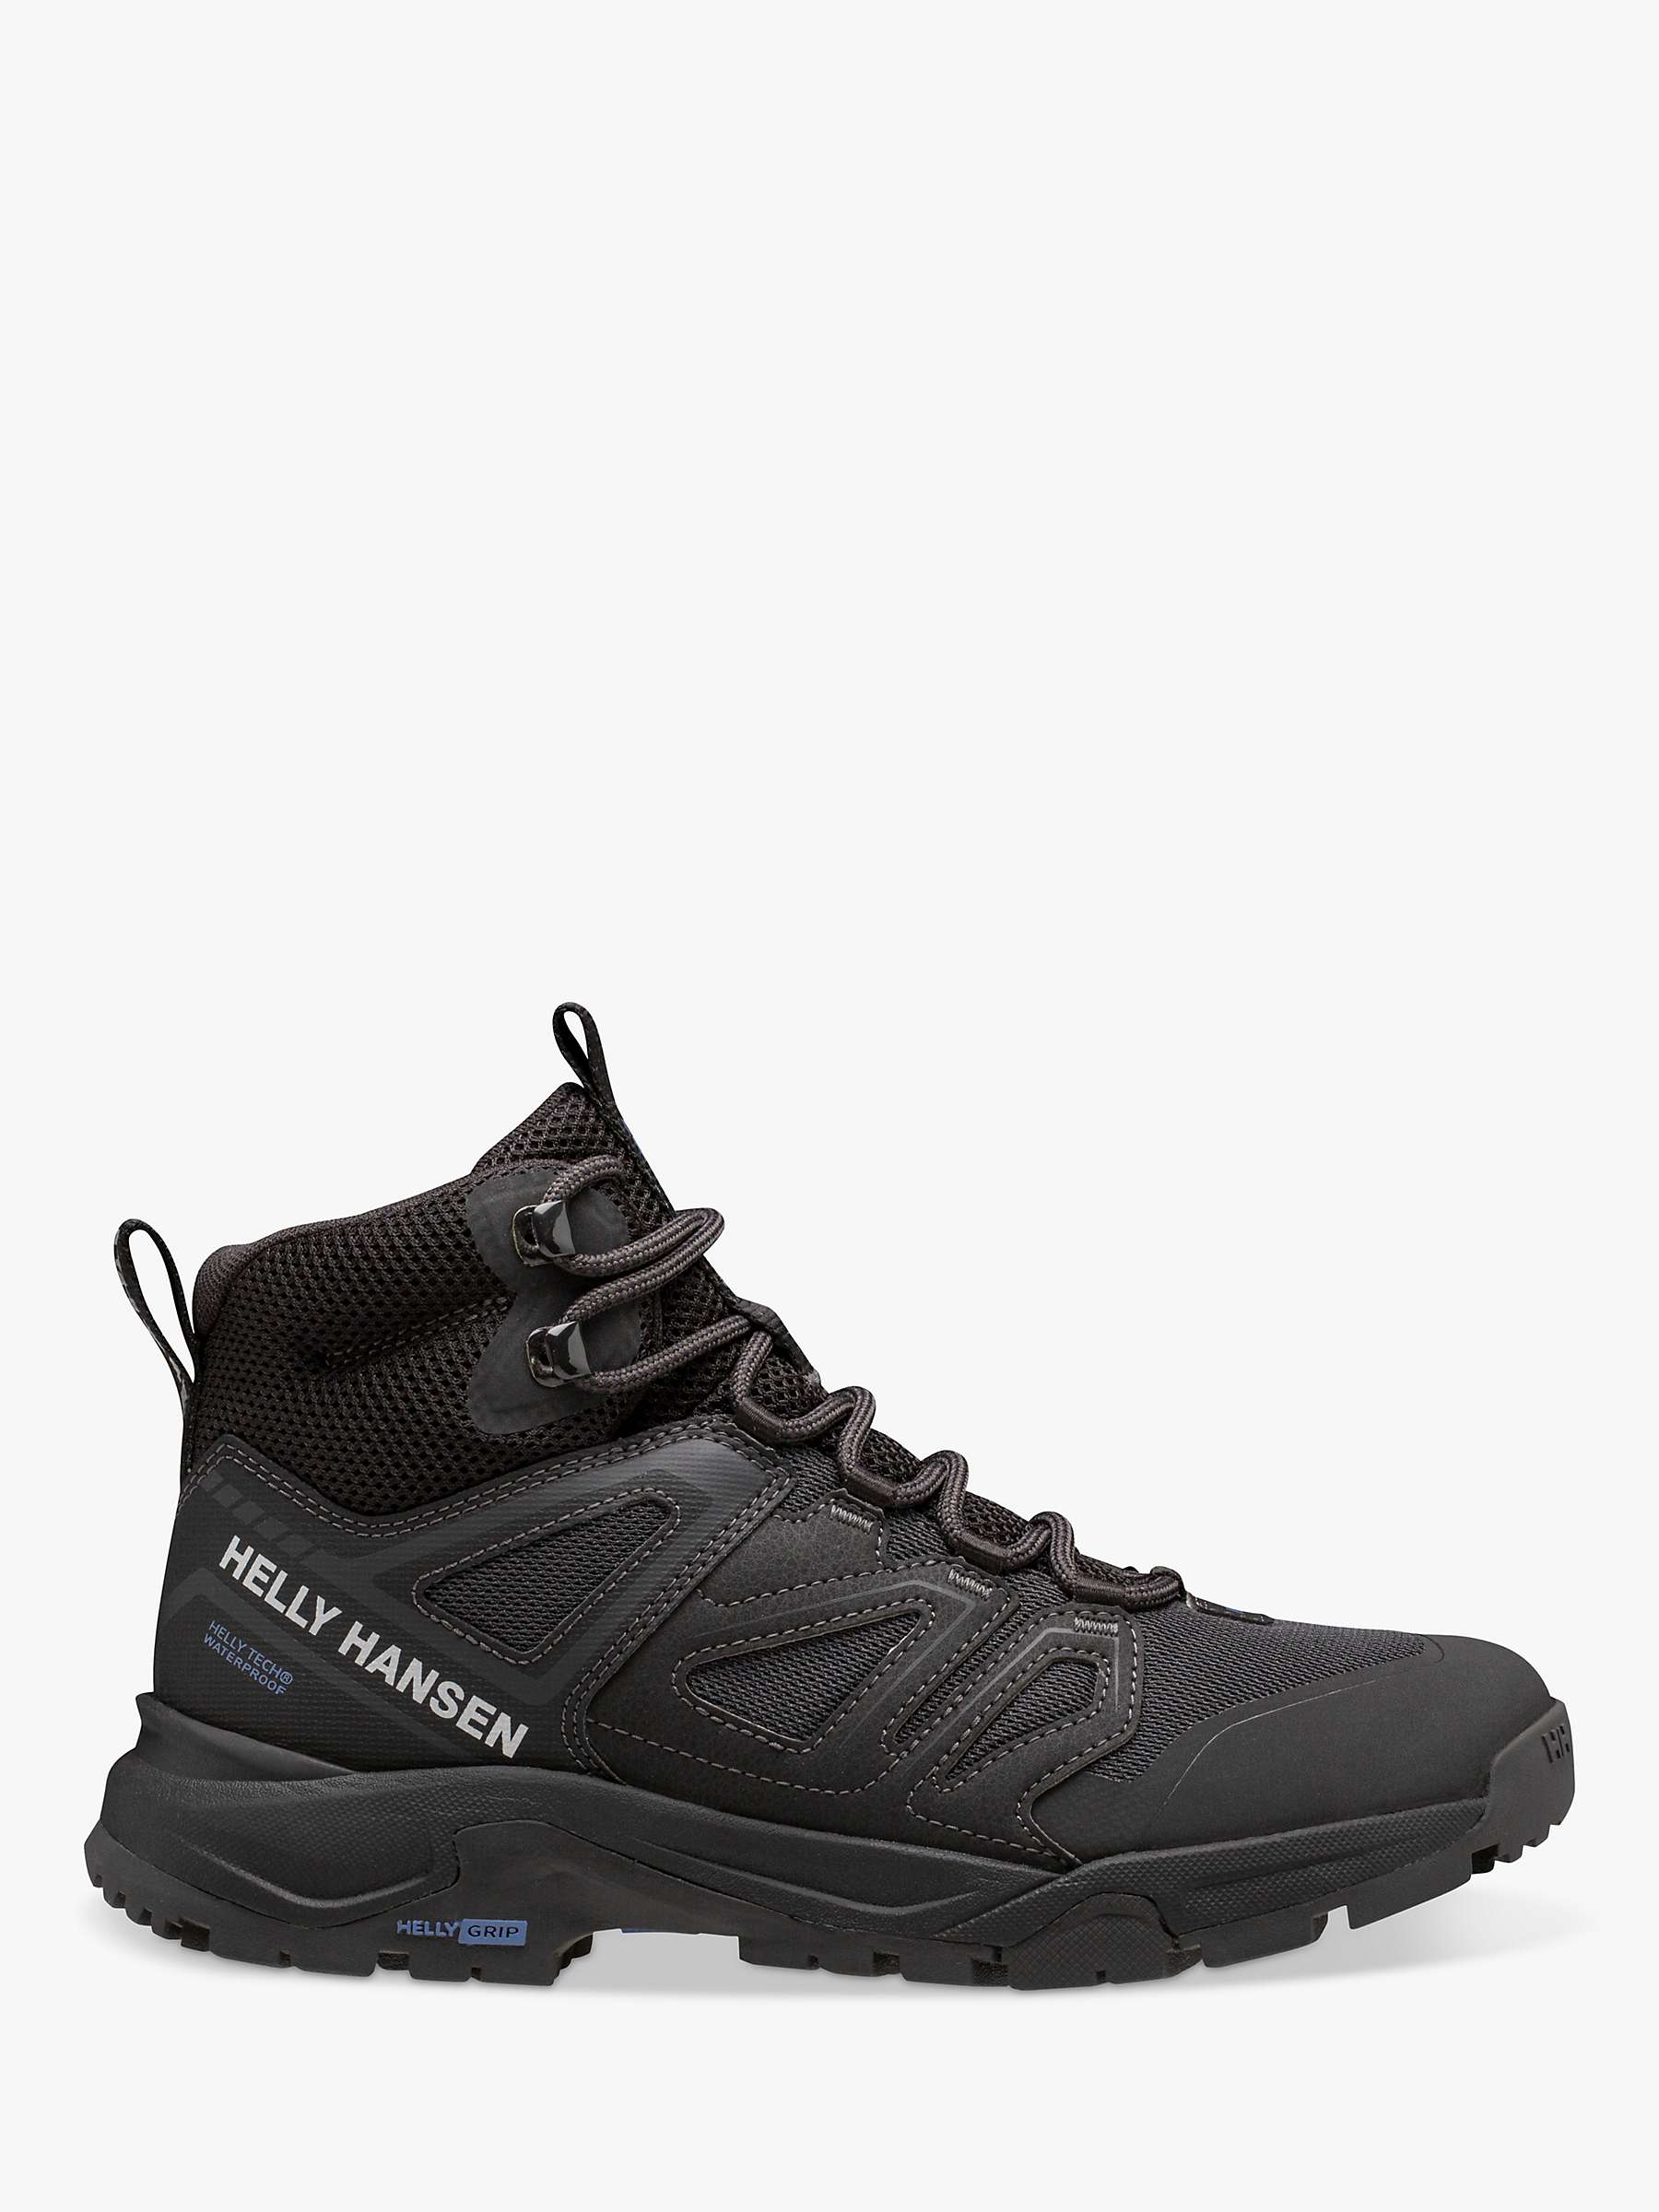 Buy Helly Hansen Stalheim Waterproof Hiking Shoes, Black Online at johnlewis.com